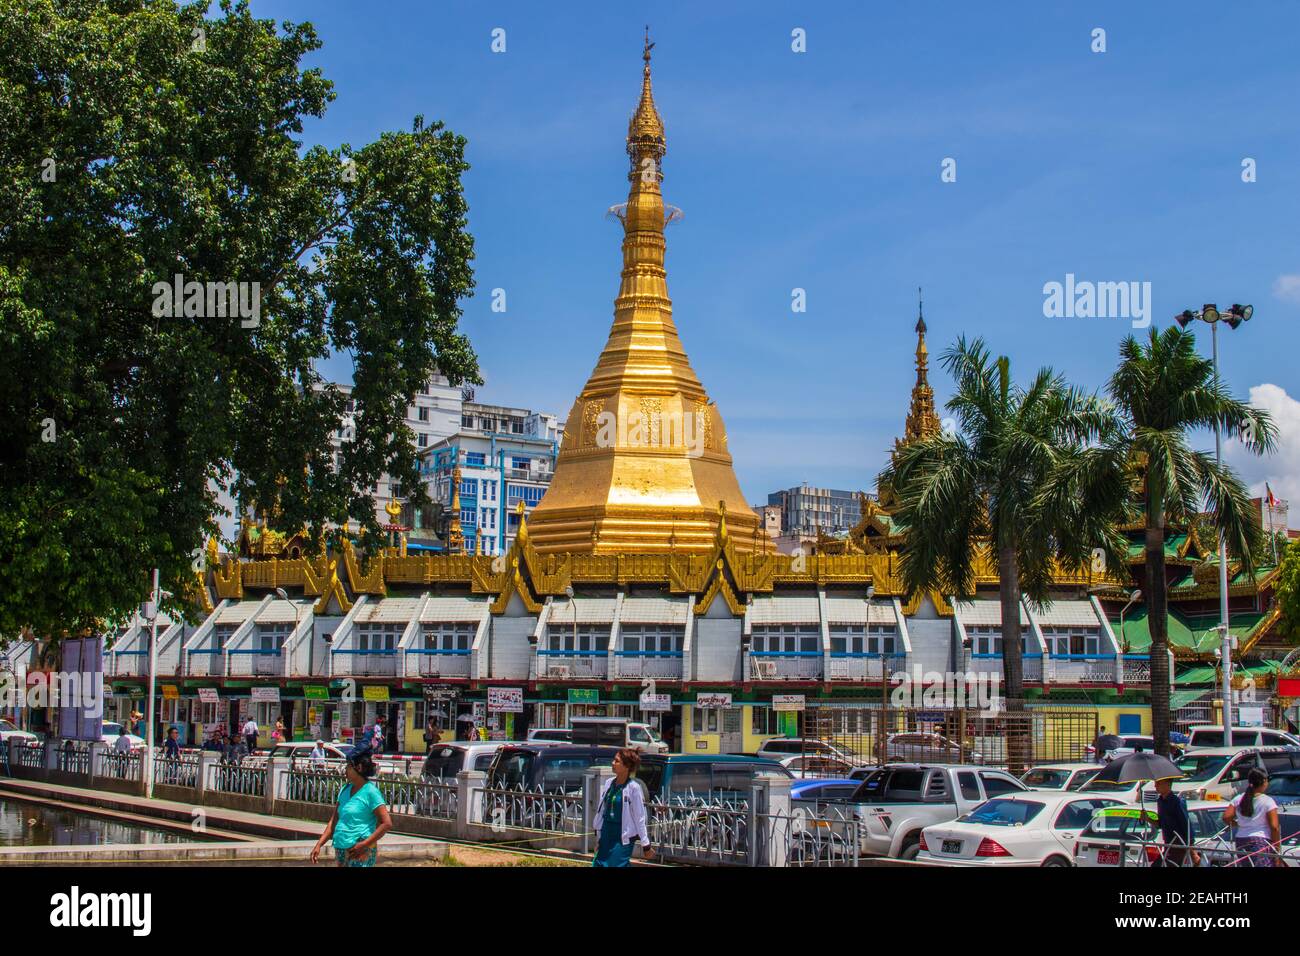 Les rues de Yangon Myanmar Birmanie Asie du Sud-est Banque D'Images